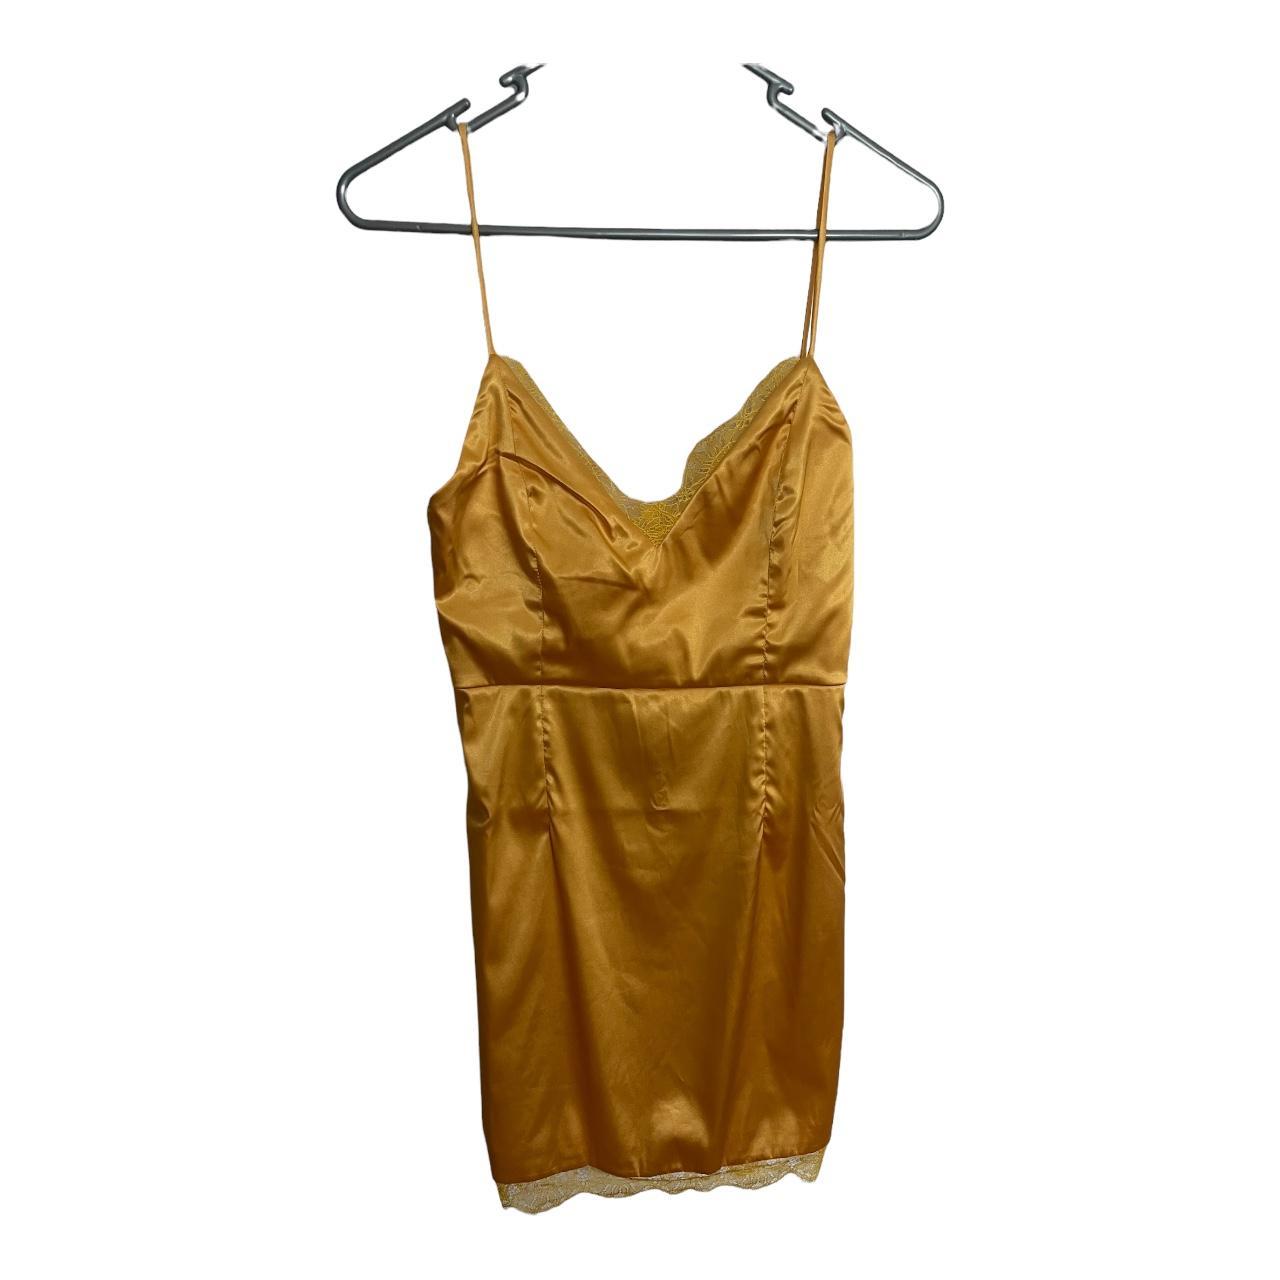 TIGERMIST / Yellow satin mini dress Size 8 BRAND... - Depop